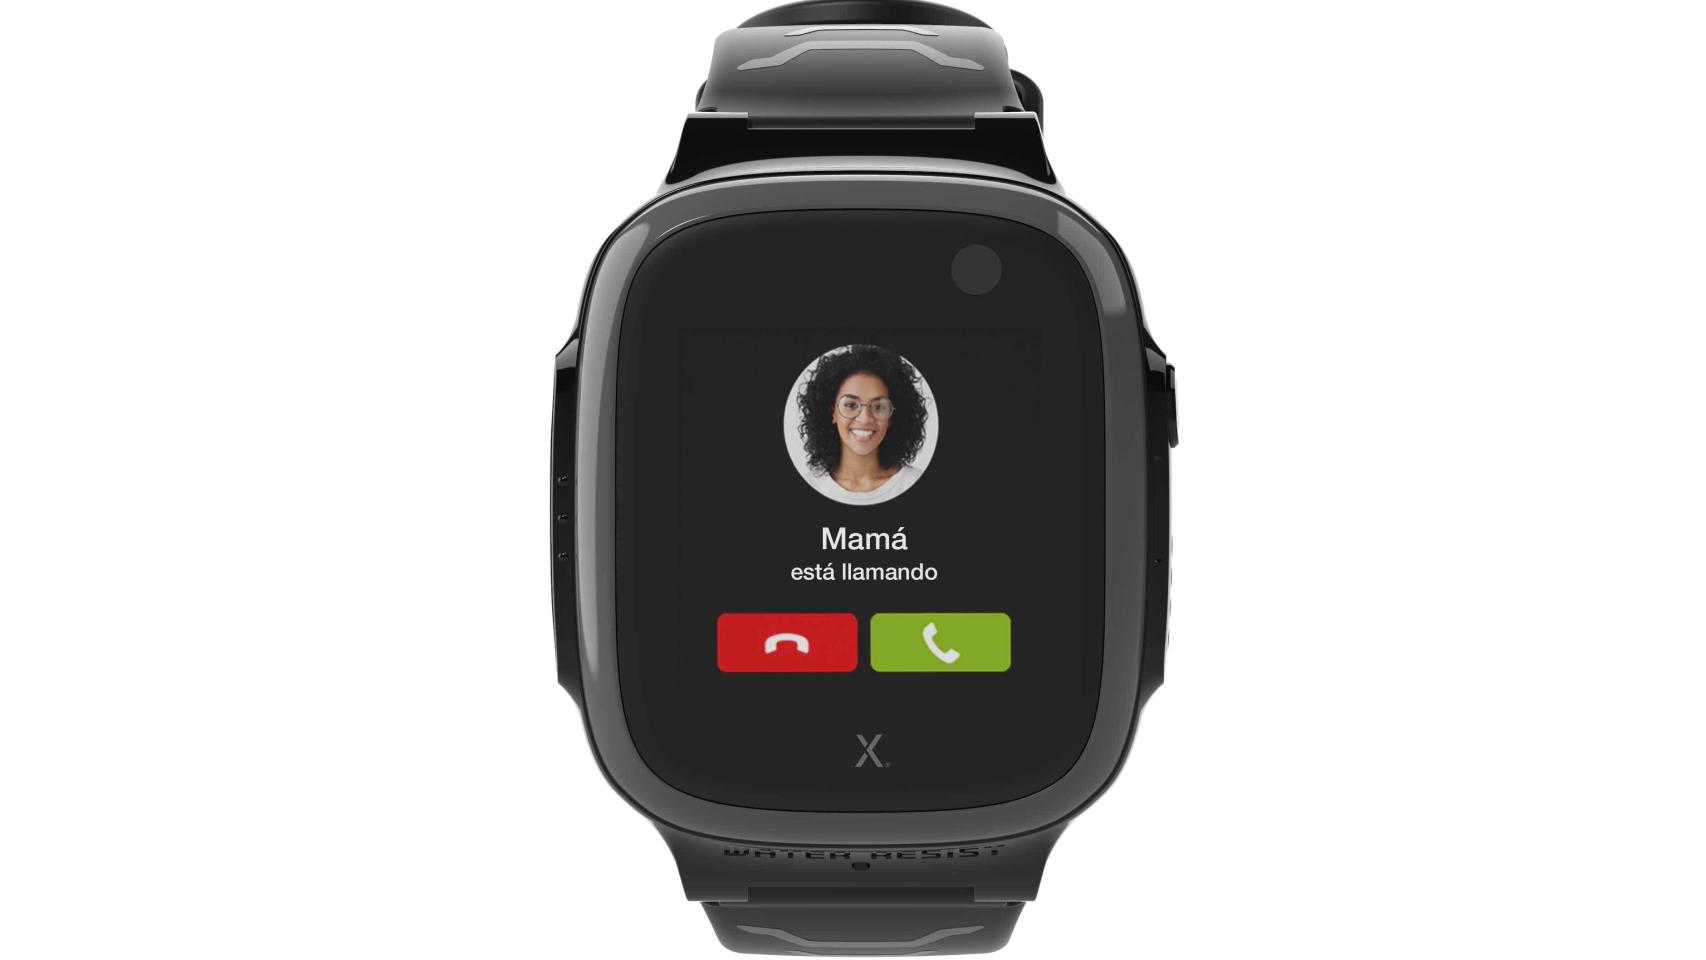 El X5 Play es un teléfono móvil en forma de reloj que comunica a los padres con los hijos a través de llamadas y mensajes con los contactos autorizados, sin acceso a Internet ni redes sociales.